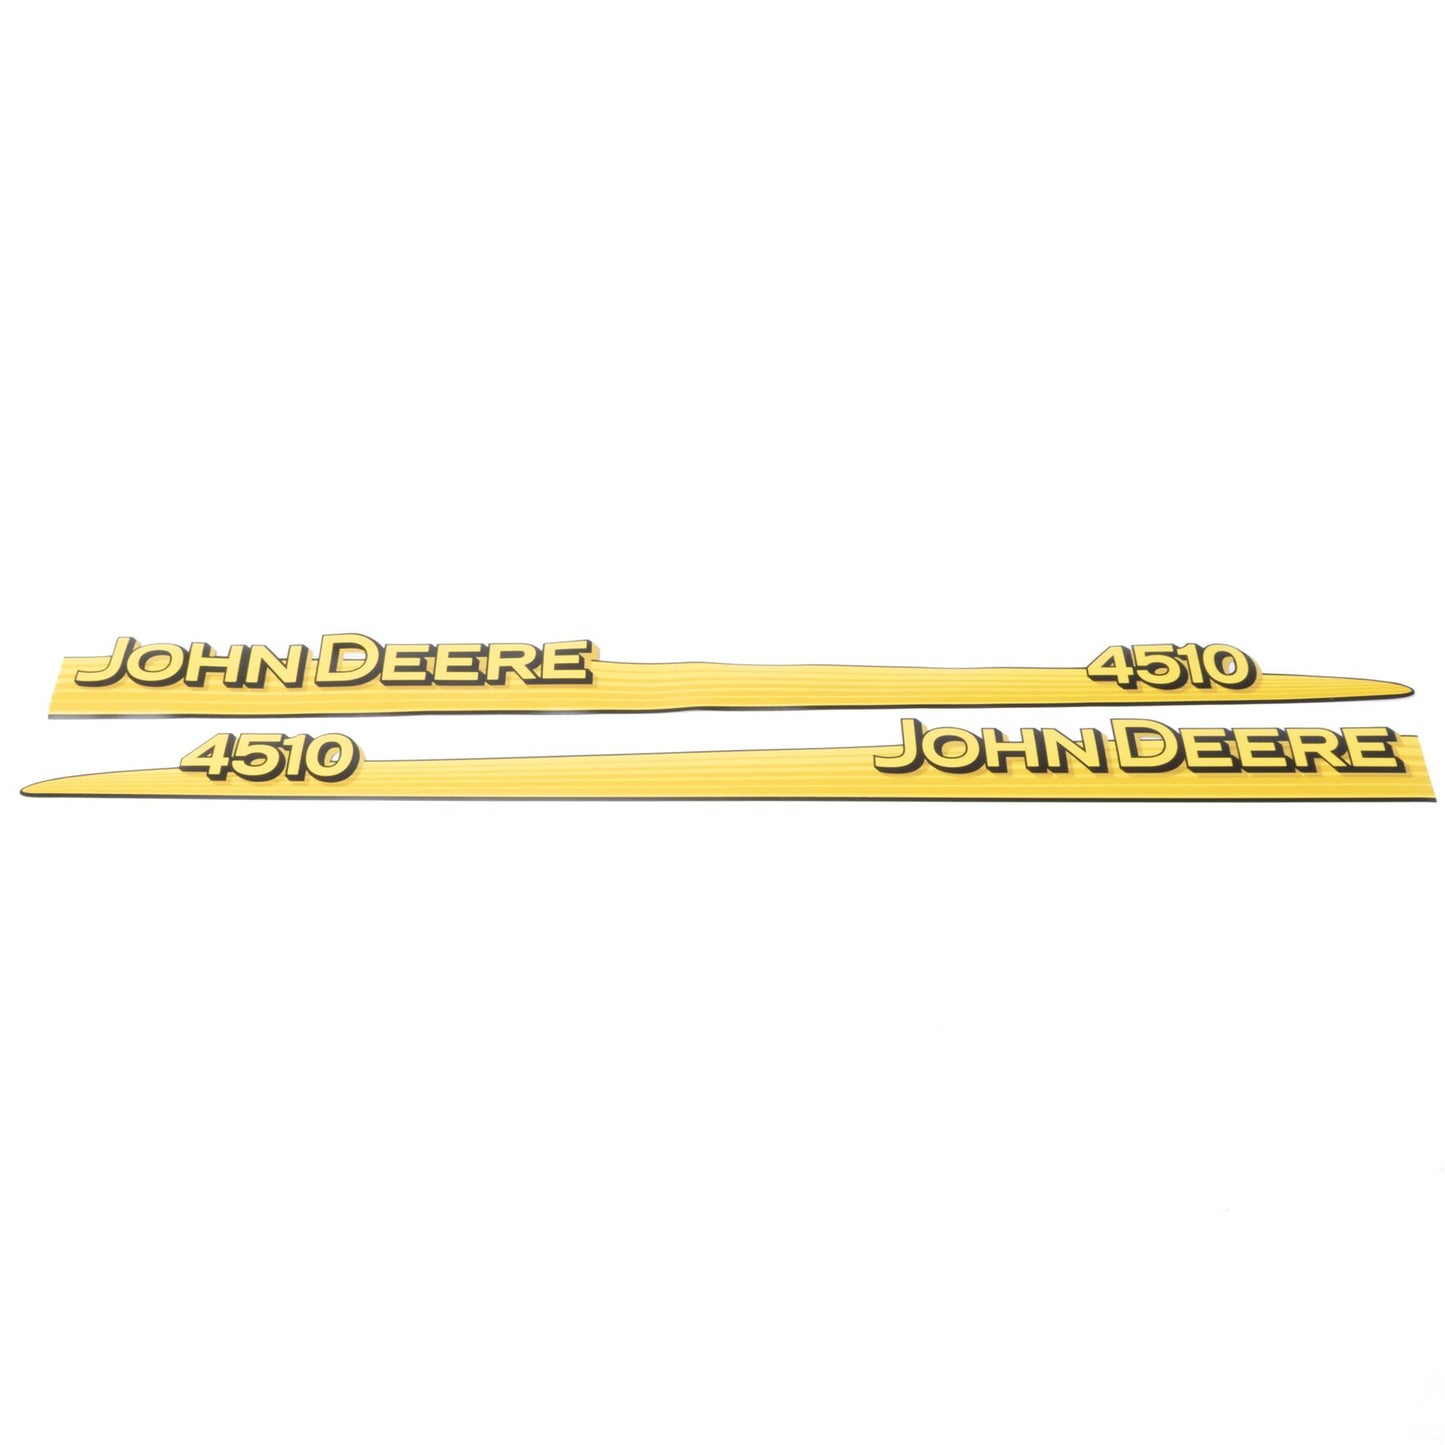 John Deere Decal - 4510 - Both Sides - LVU12289 LVU12290